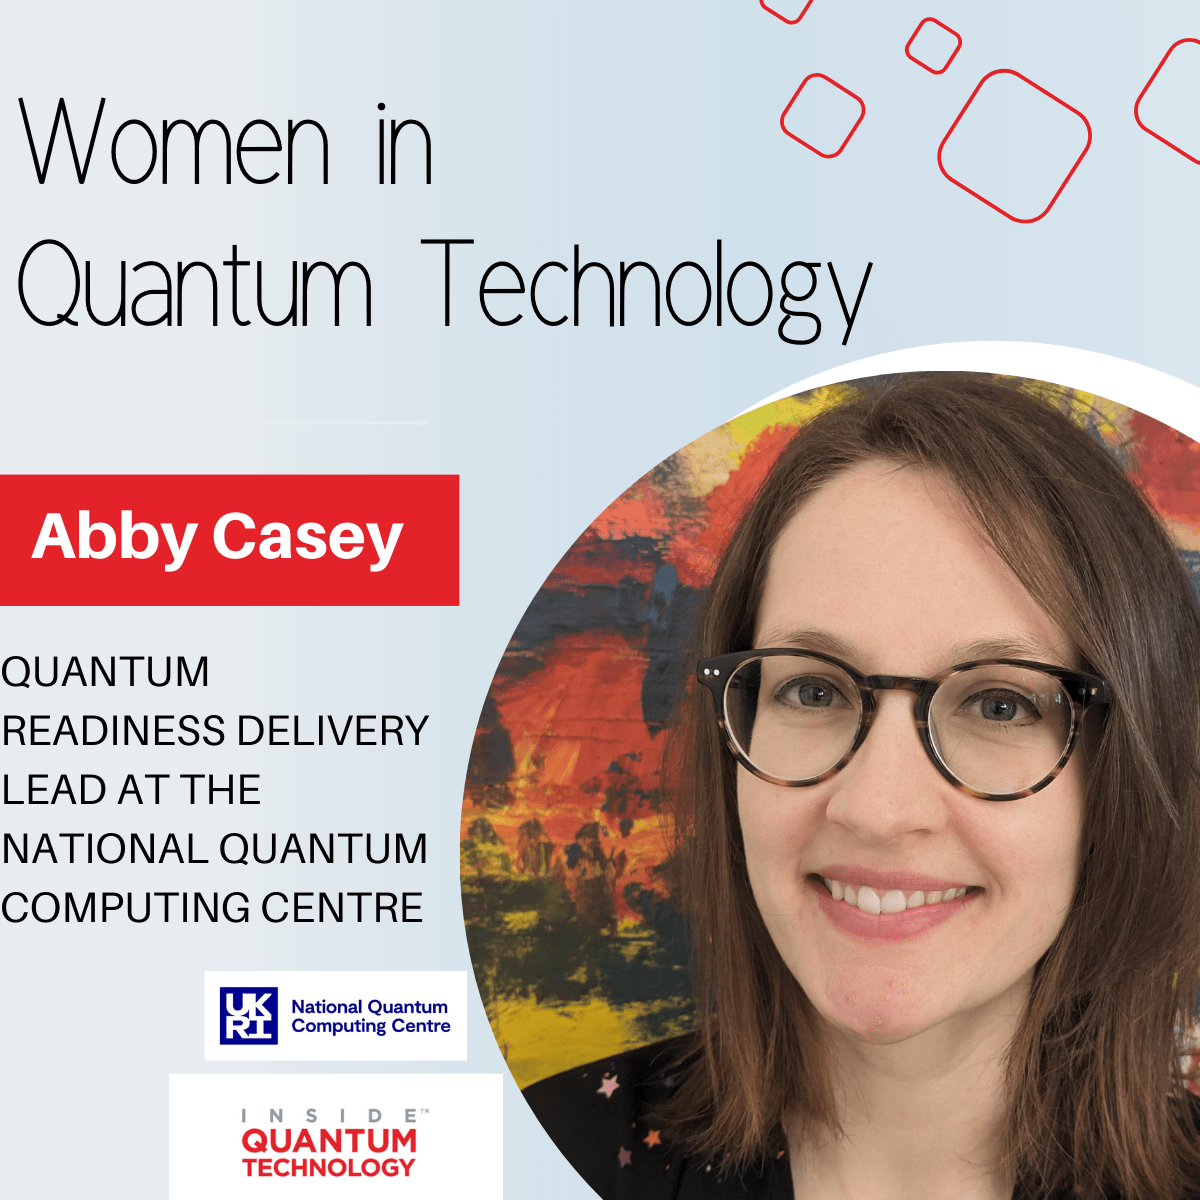 Женщины квантовых технологий: Эбби Кейси из Национального центра квантовых вычислений (NQCC) — Квантовые технологии изнутри